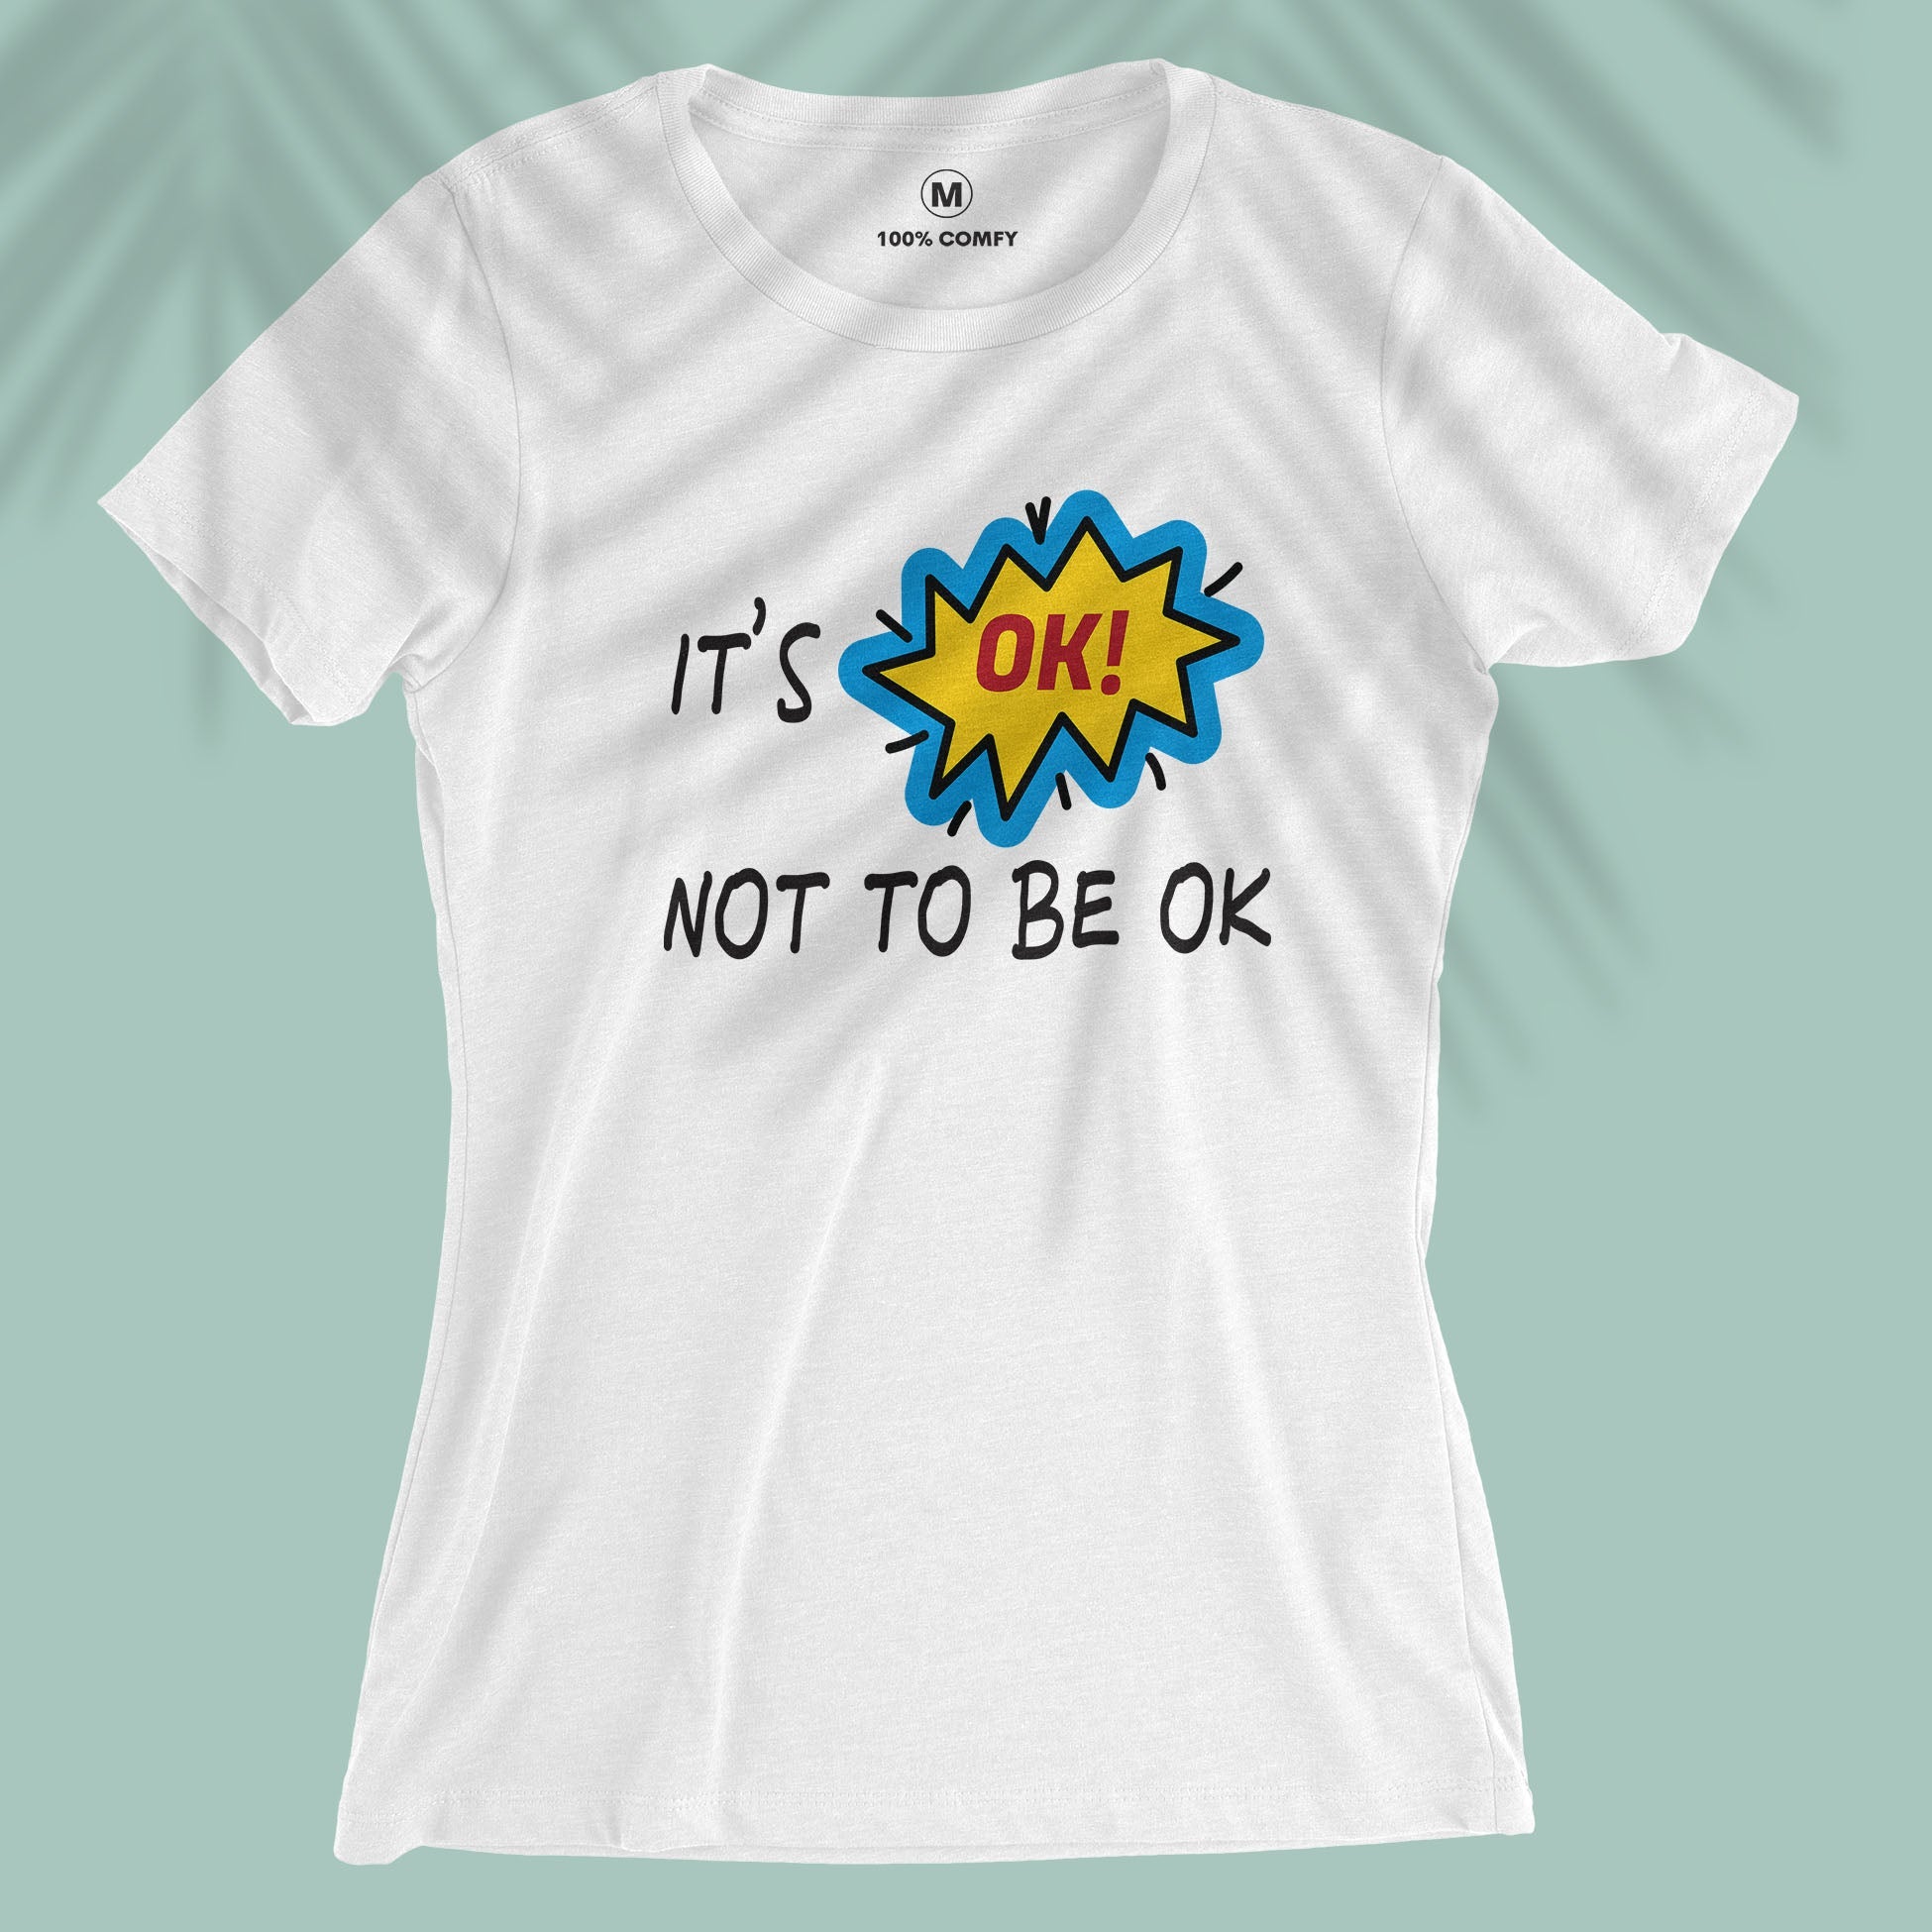 OK! - Women T-shirt